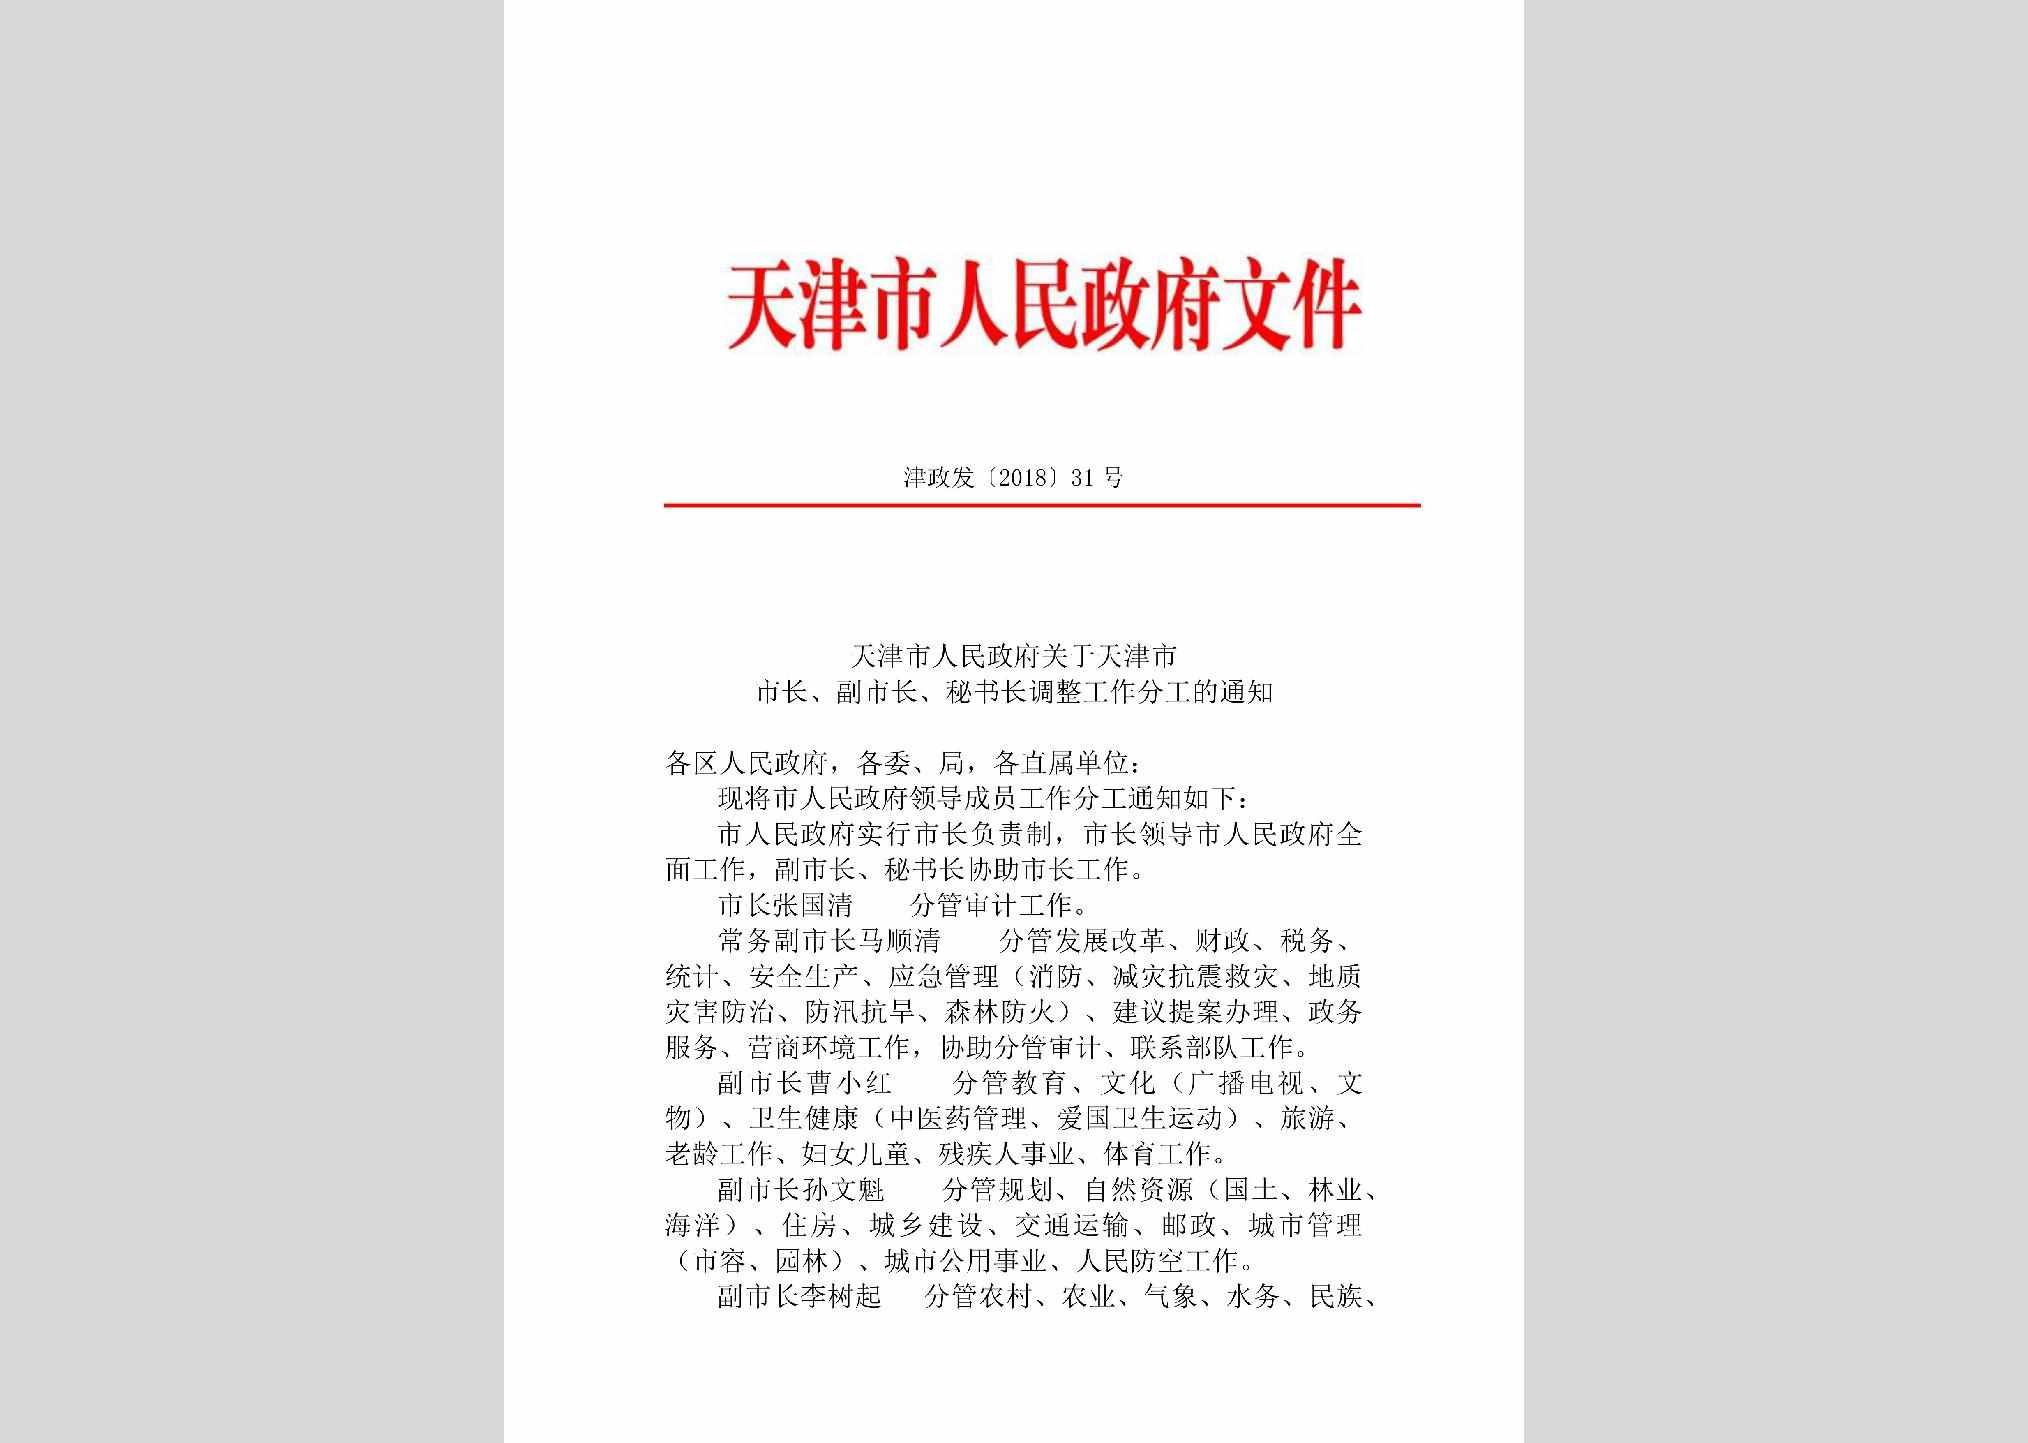 津政发[2018]31号：天津市人民政府关于天津市市长、副市长、秘书长调整工作分工的通知